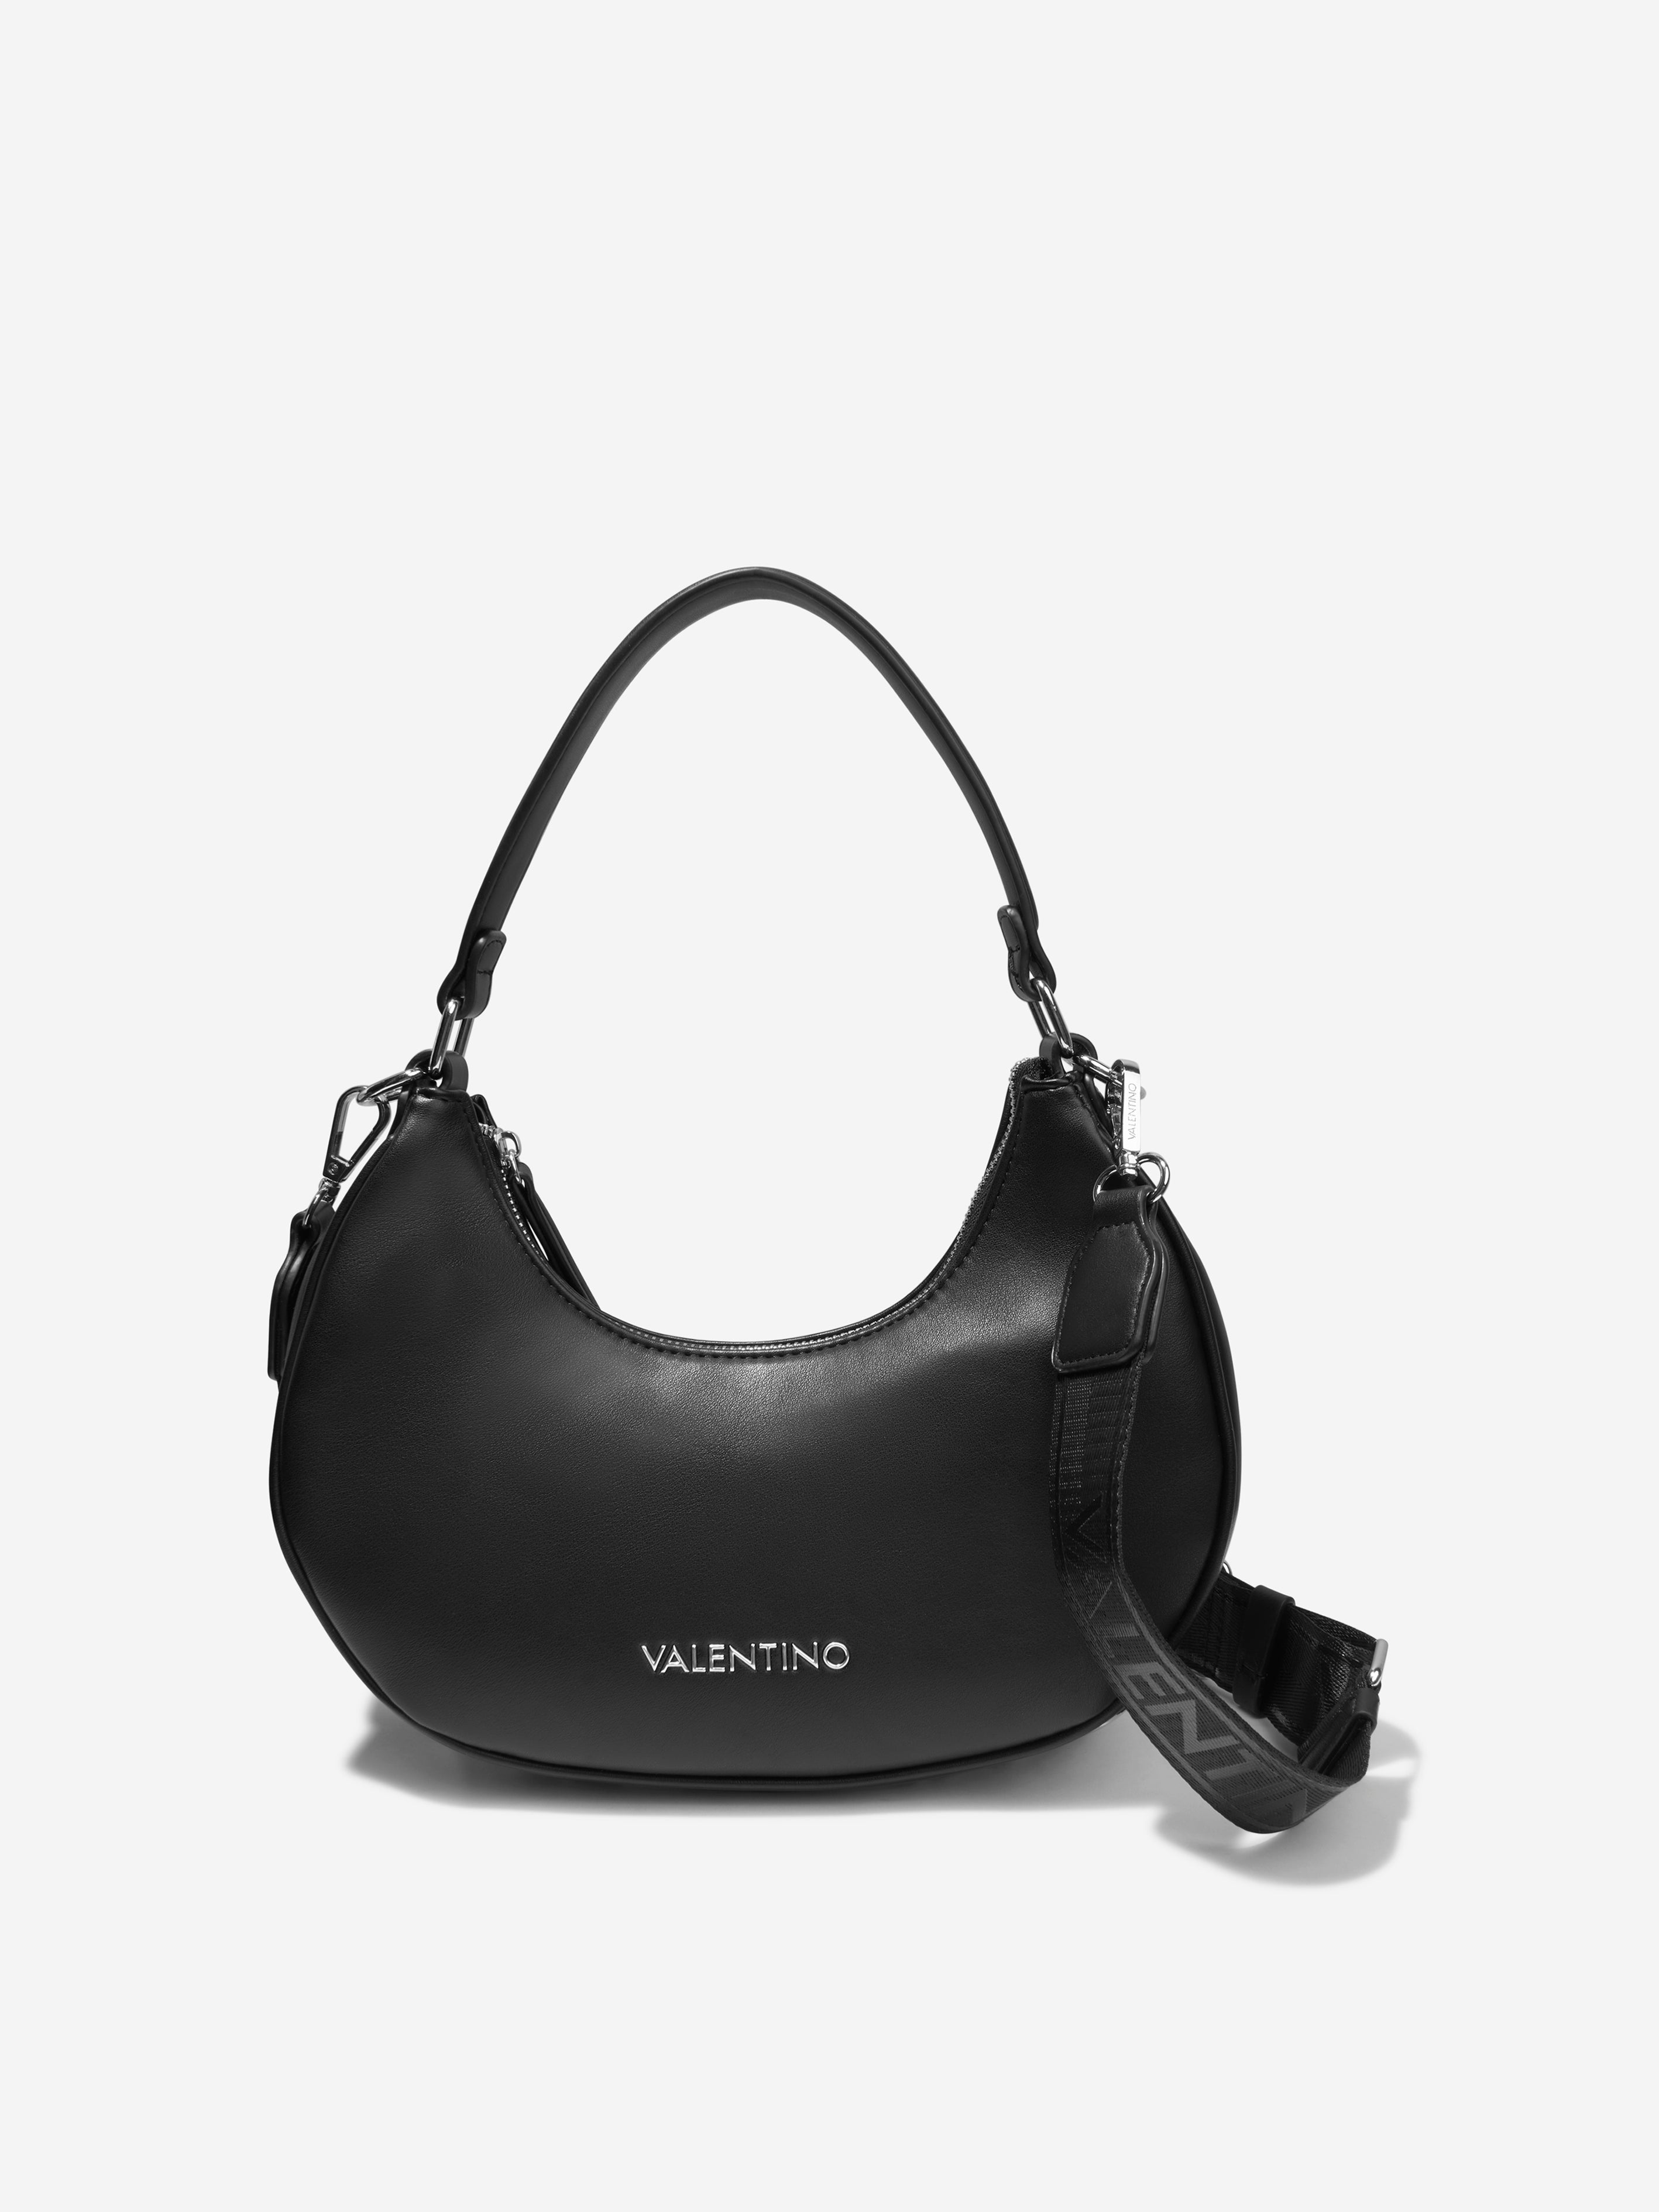 Valentino Girls Coconut Hobo Bag in Black